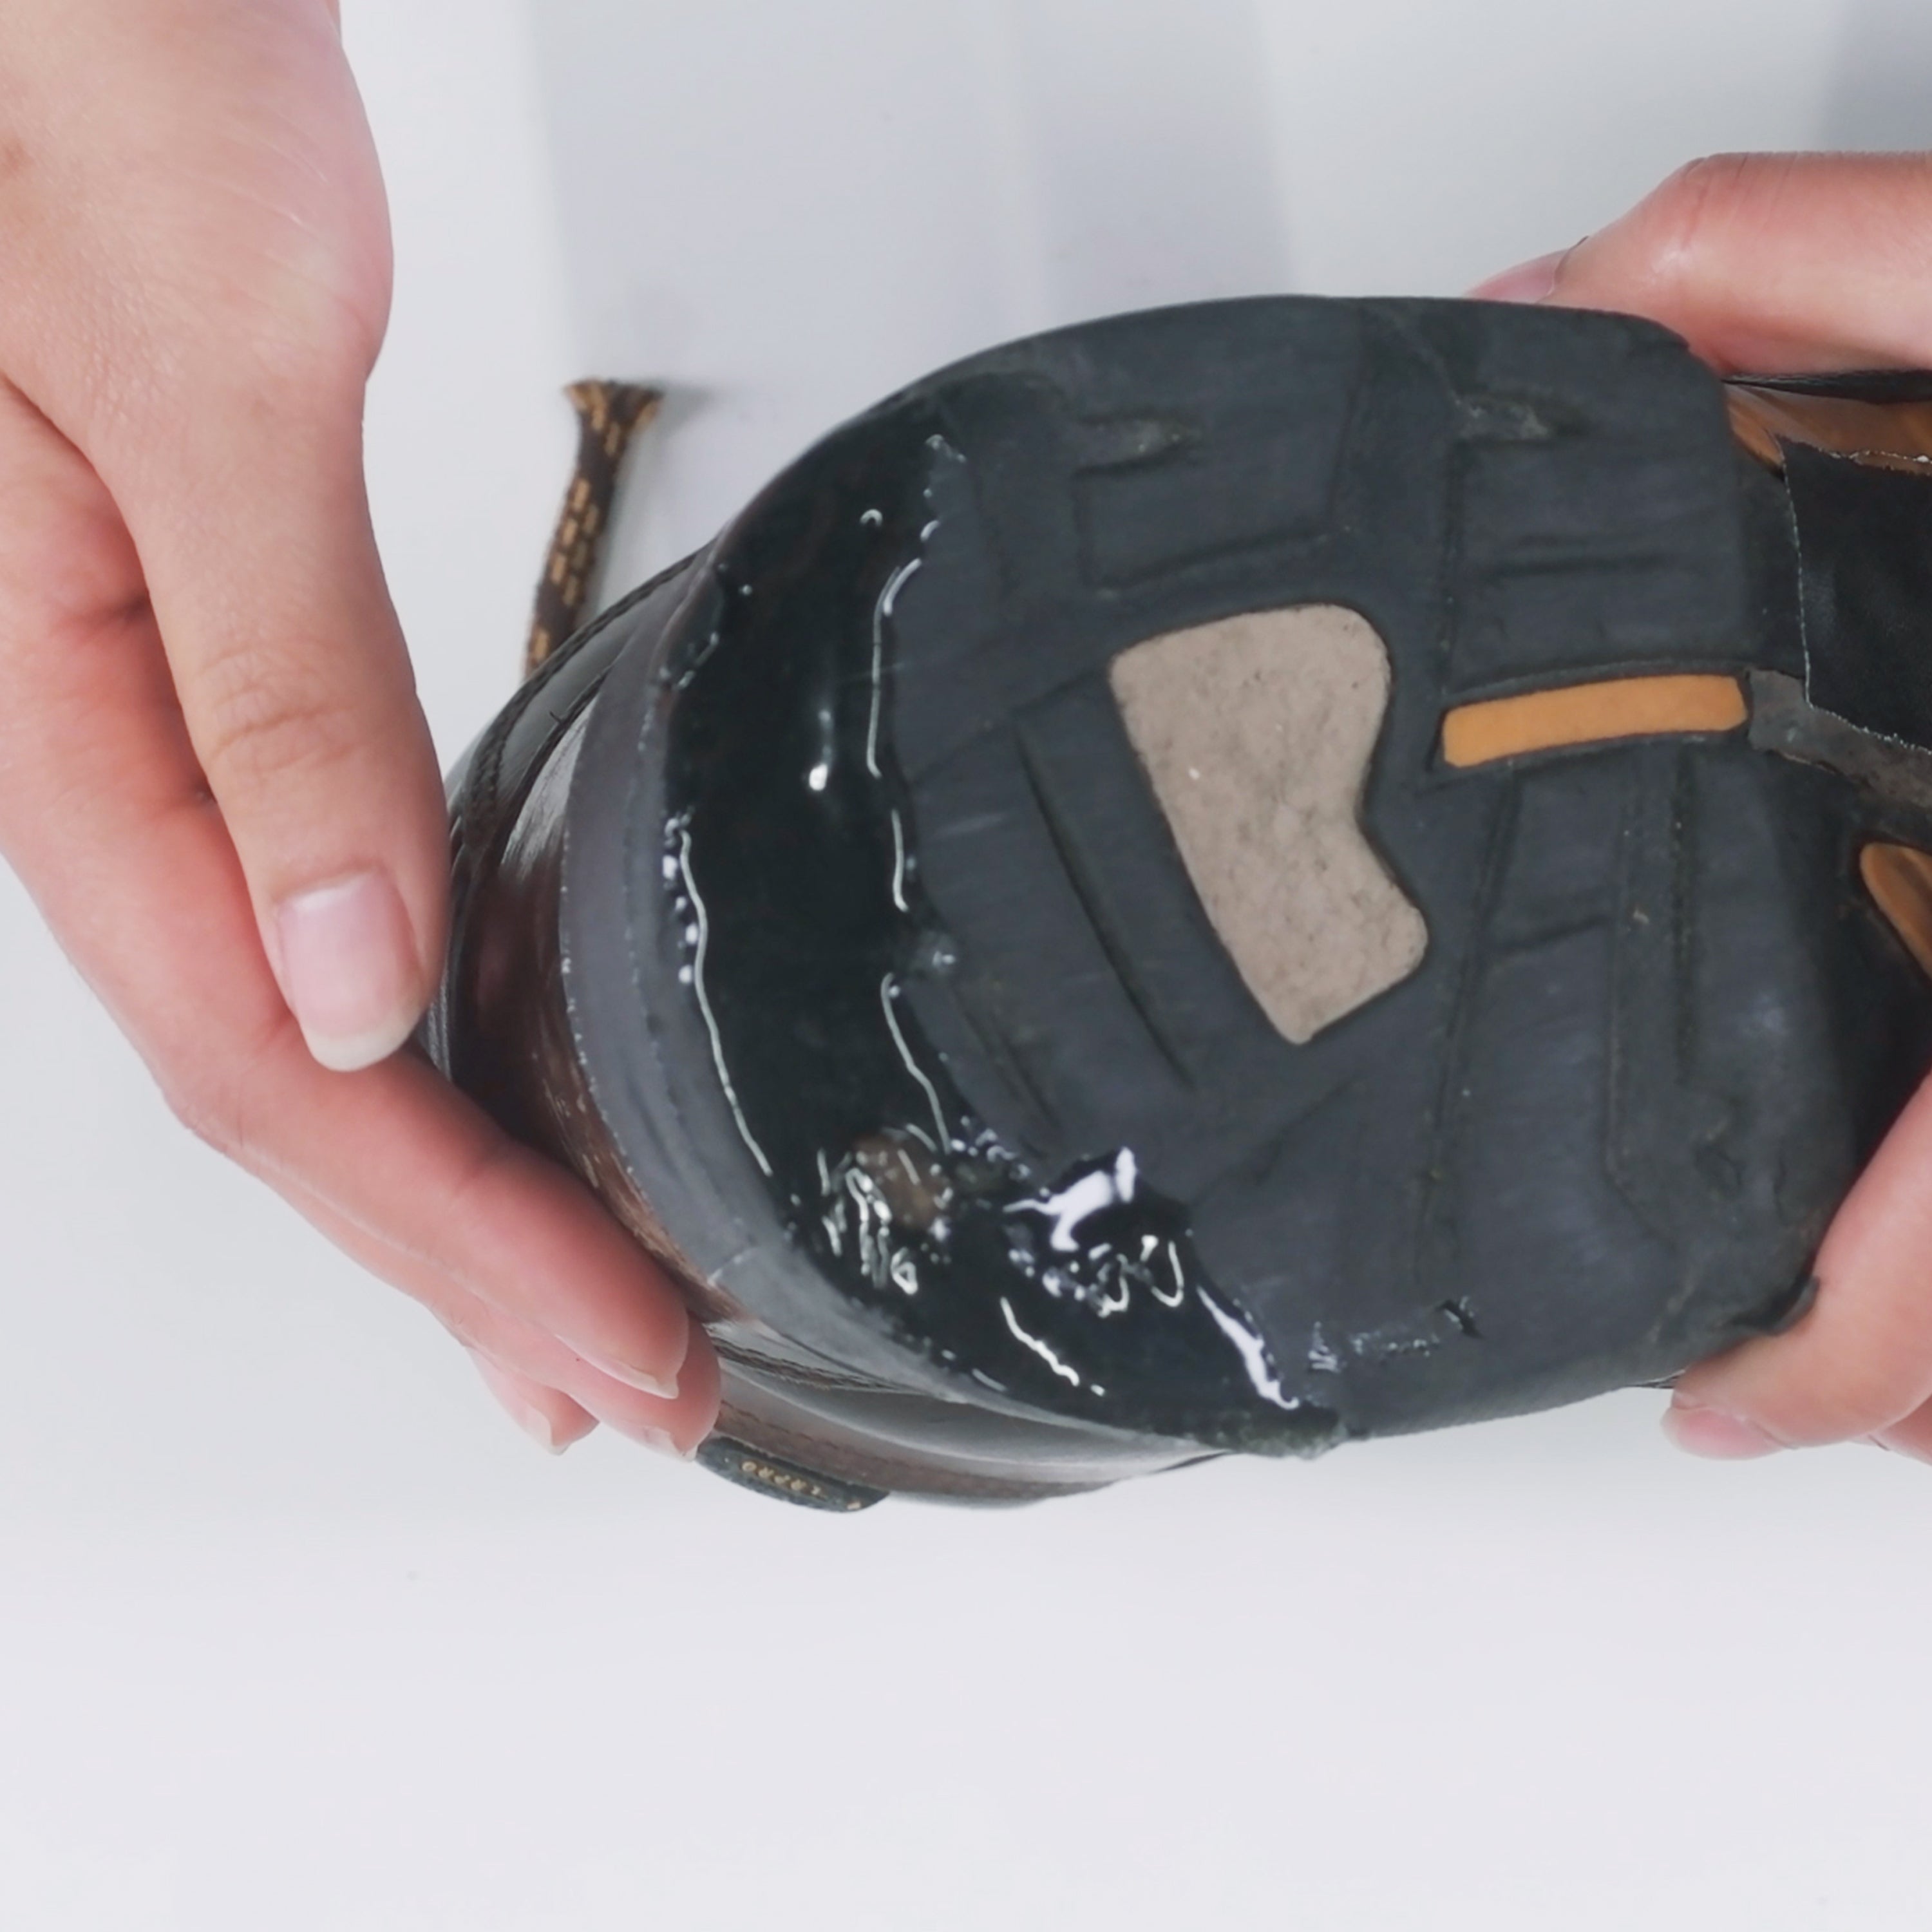 Gear Aid - Freesole Shoe Repair 1 oz